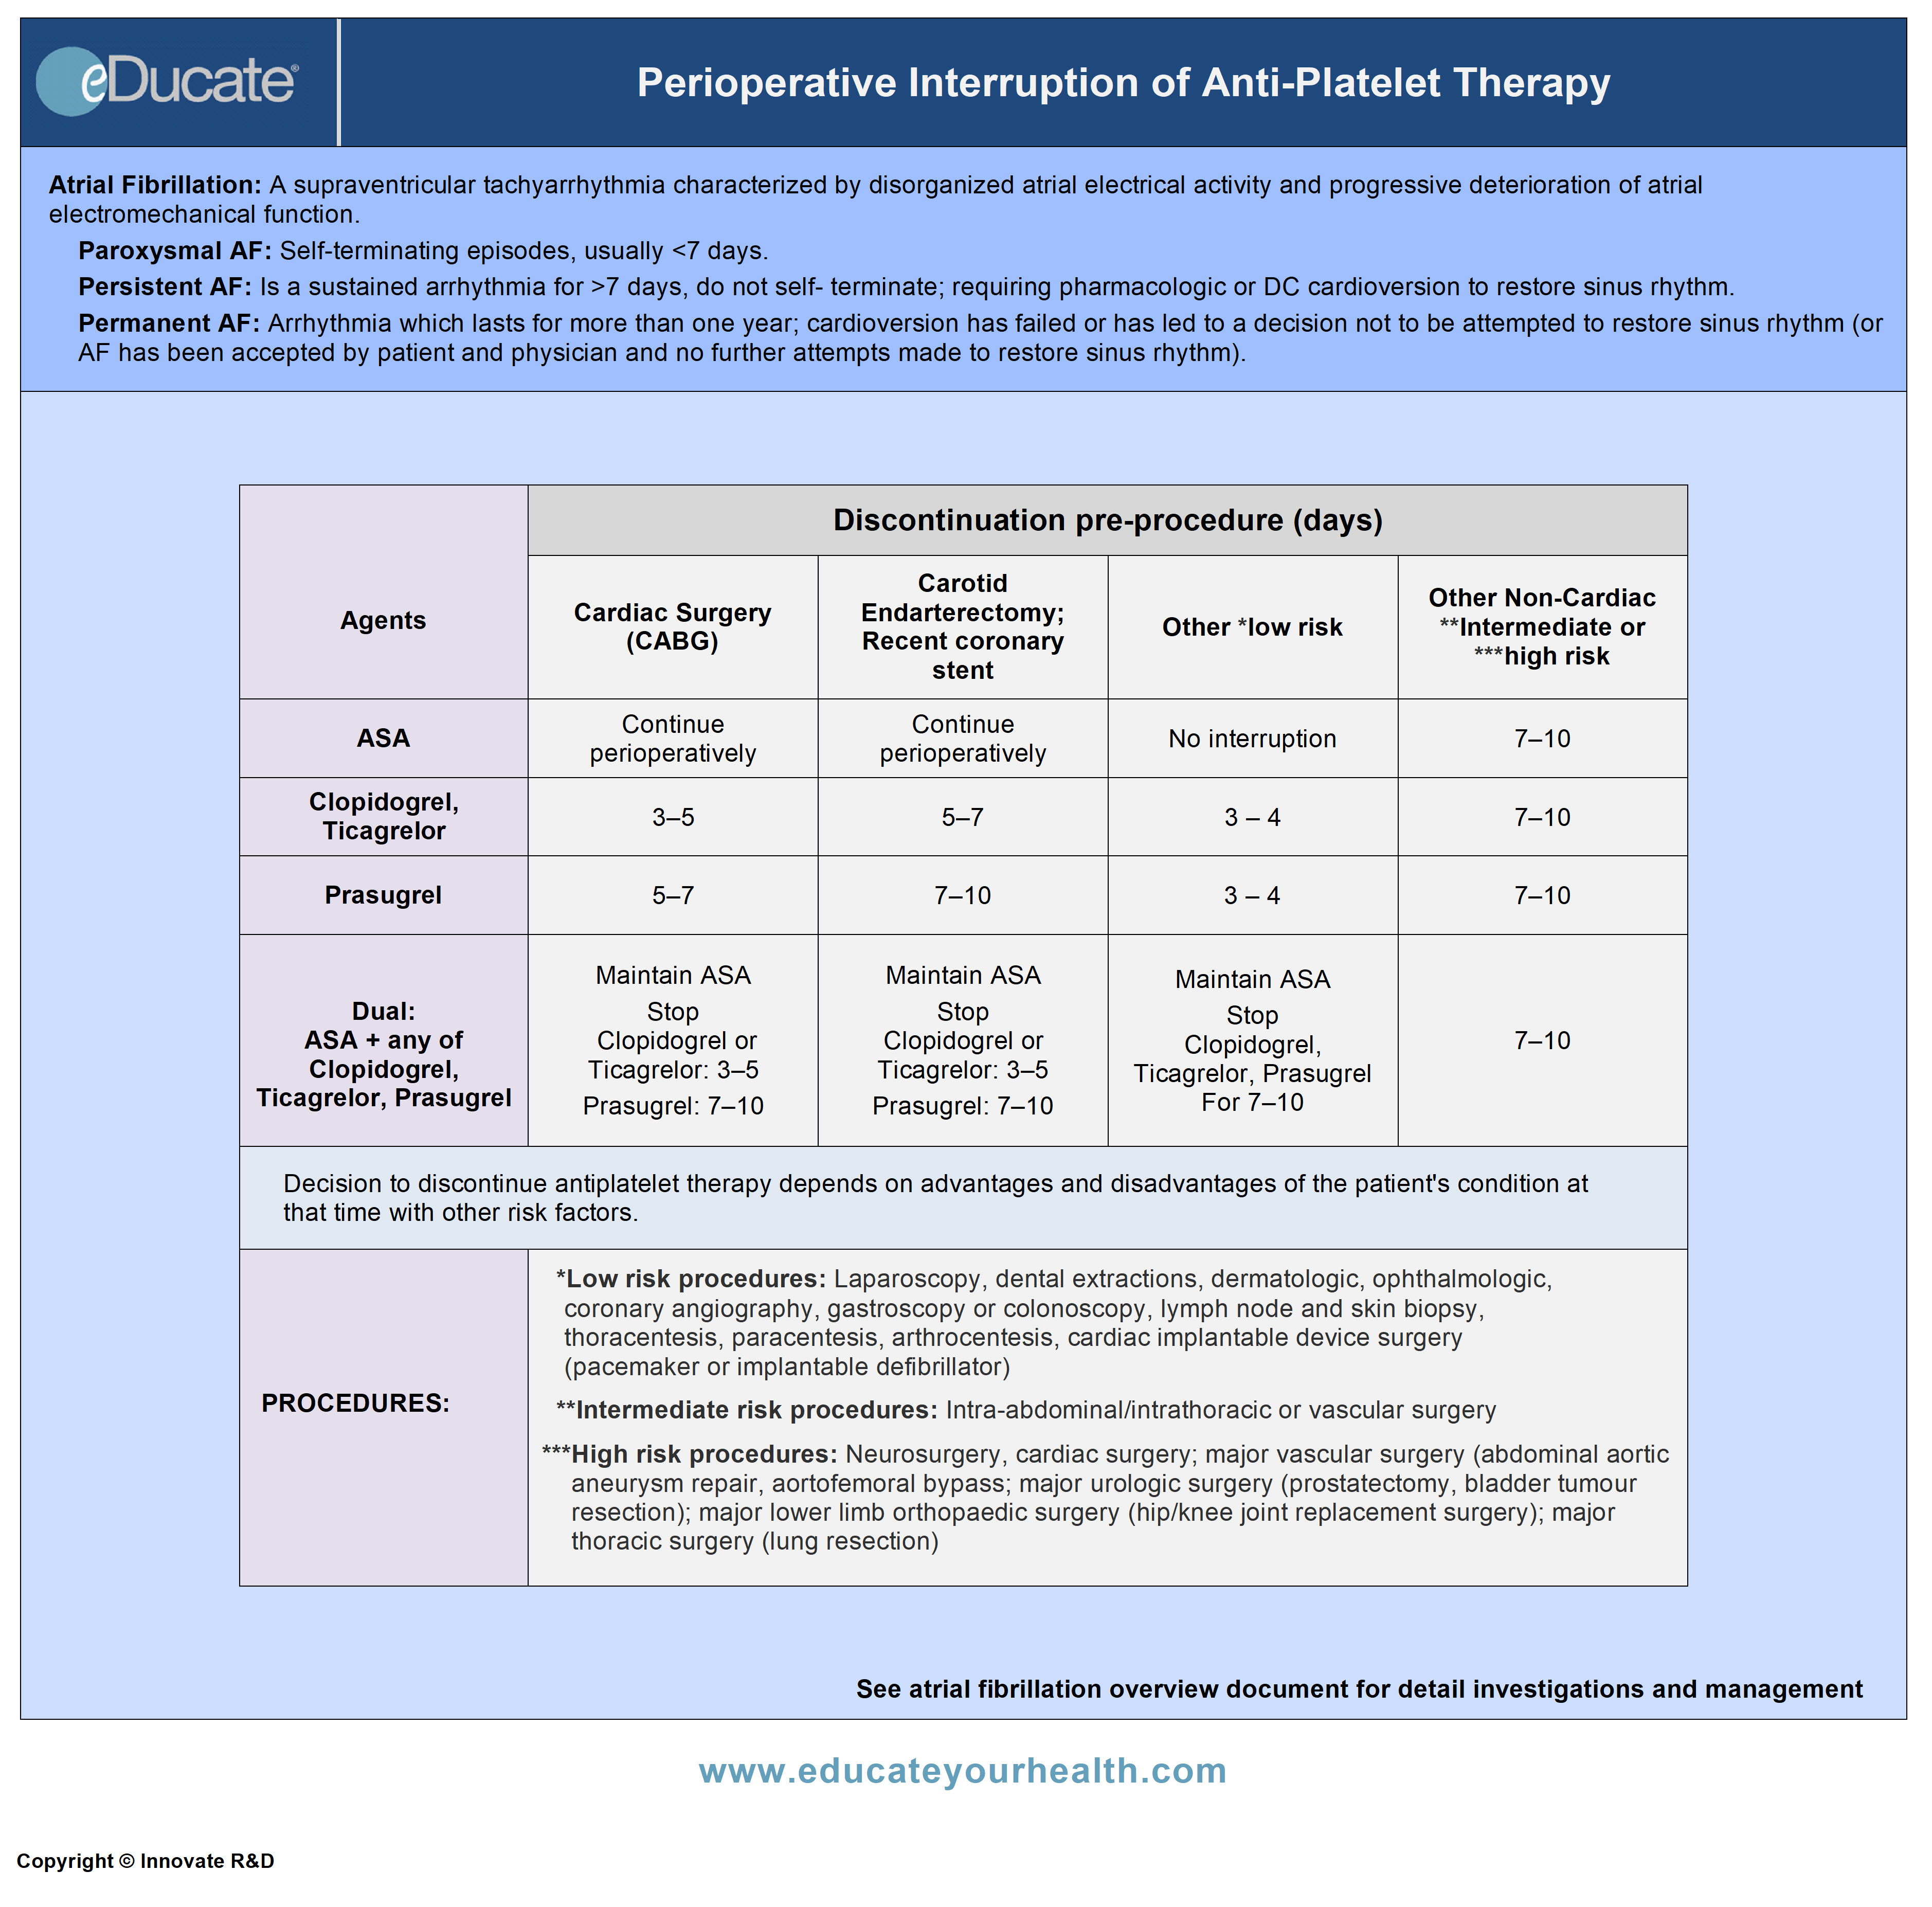 Perioperative Interruption of Anti-Platelet Therapy